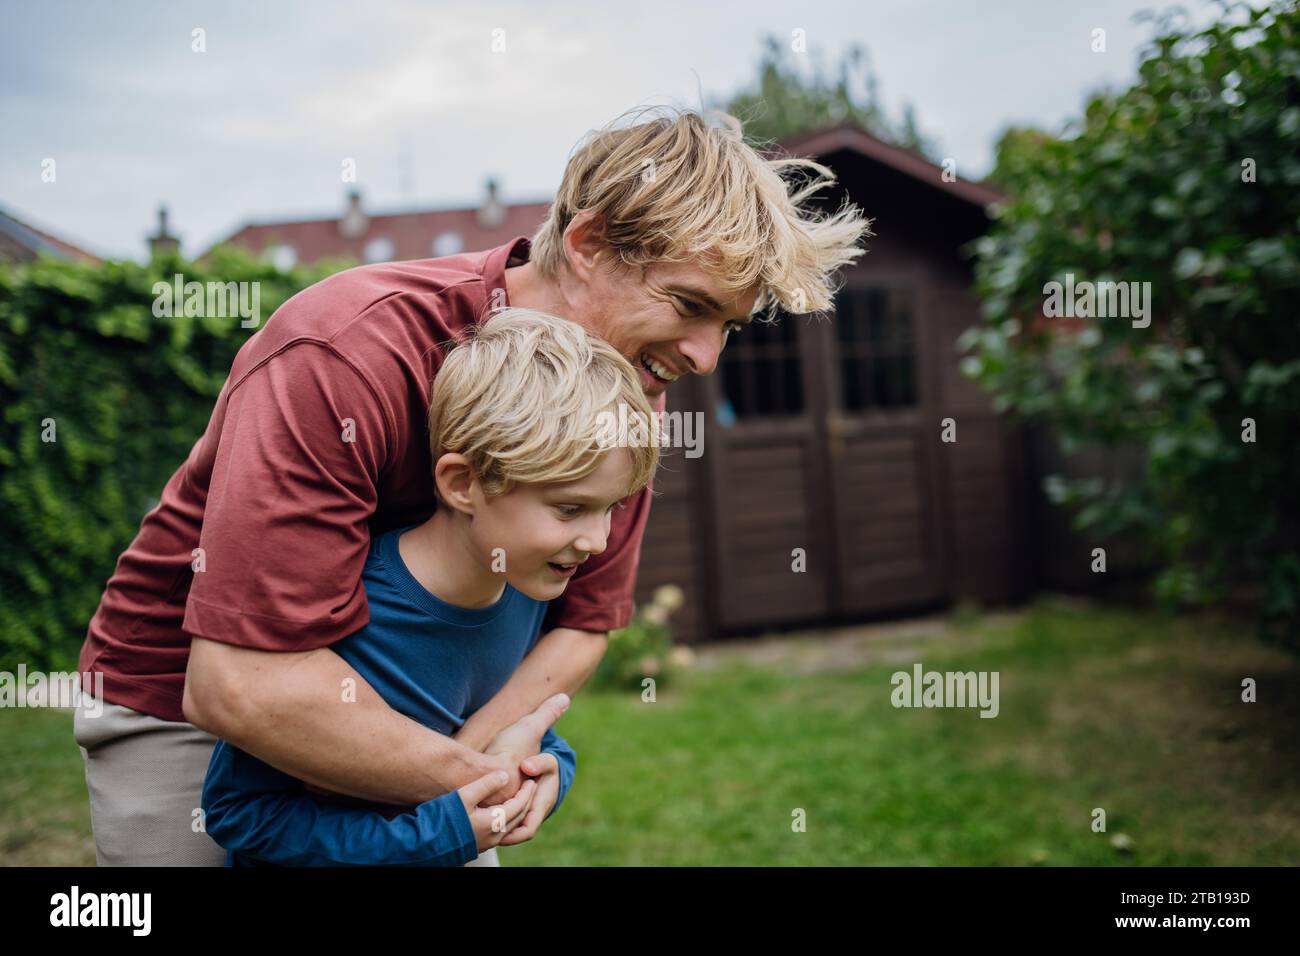 Vater, der seinen jungen Sohn umarmen will, hat Bindungsmomente. Das Konzept des Vatertags und die Vaterliebe. Stockfoto